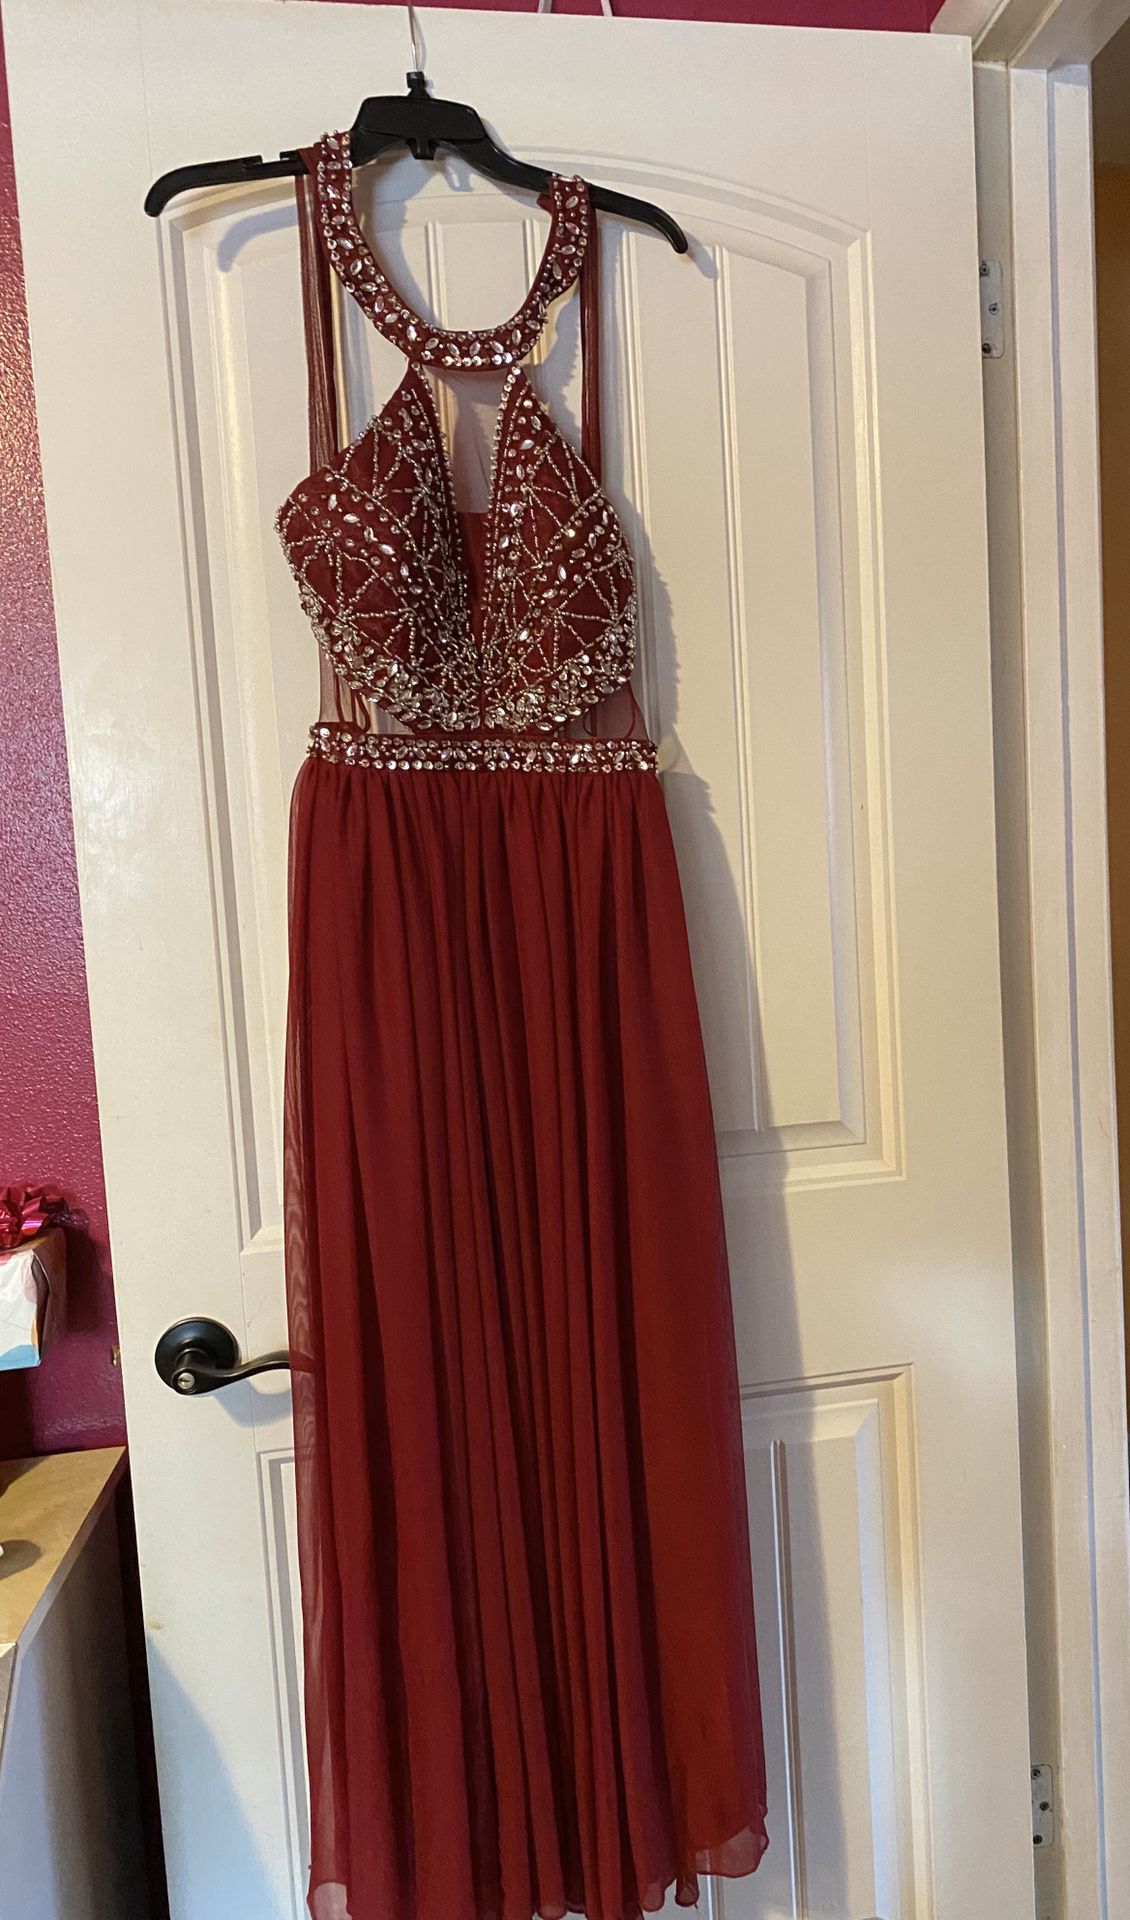 Maroon prom dress